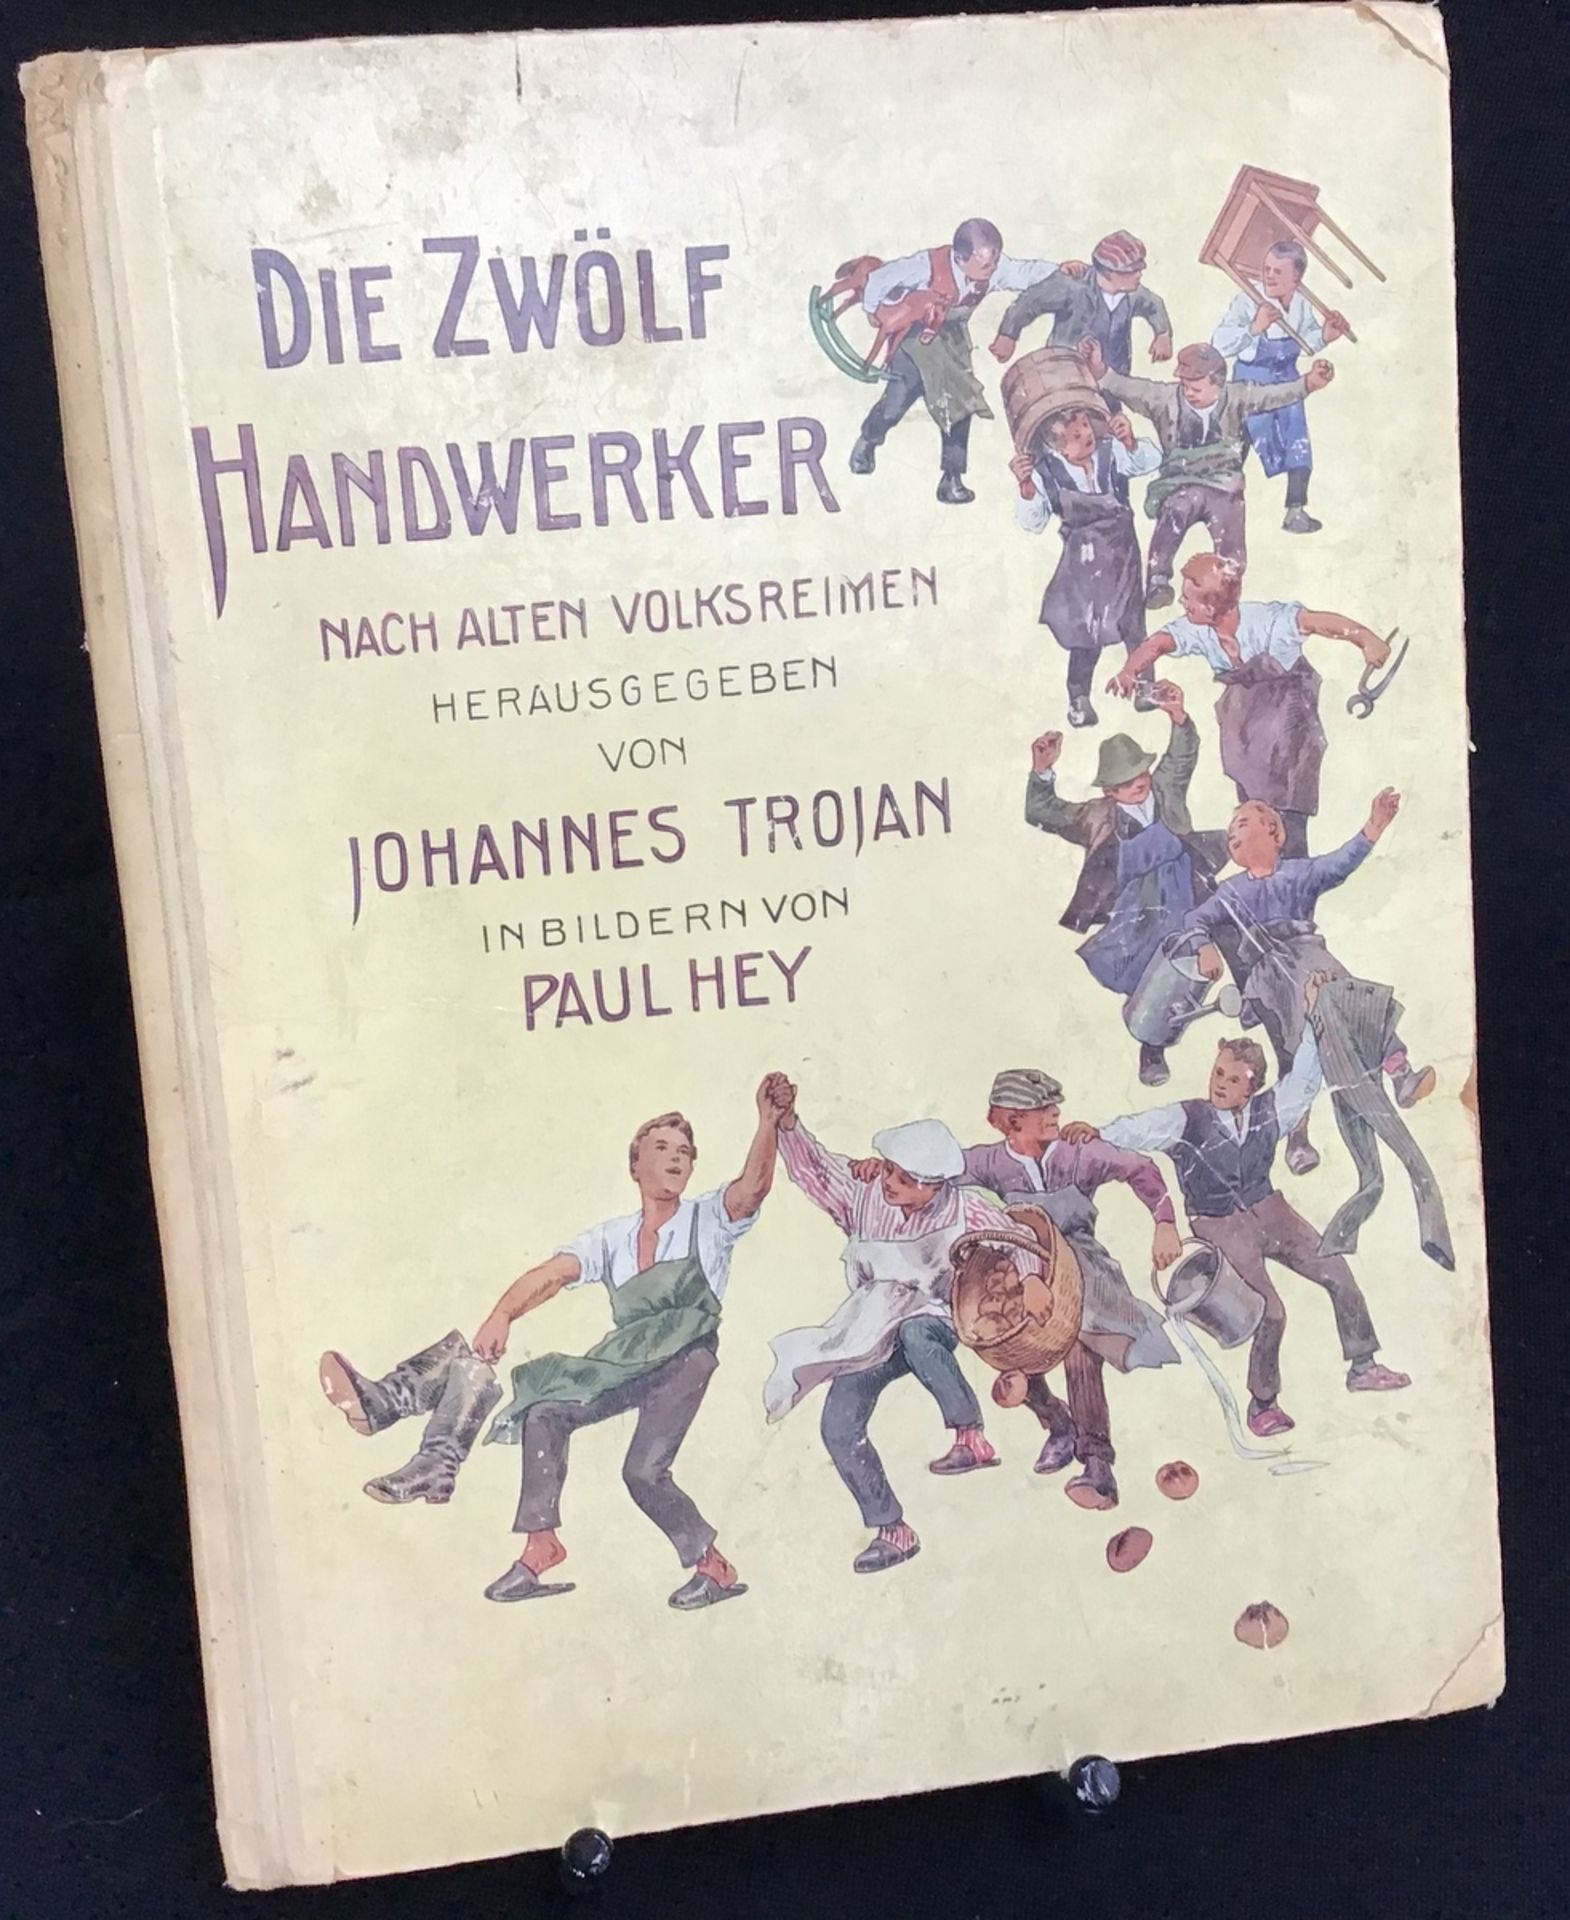 "Die zwölf Handwerker" Johannes Trojan, Bilder von Paul Hey, Verlag Neufeld & Henius Berlin 1910,